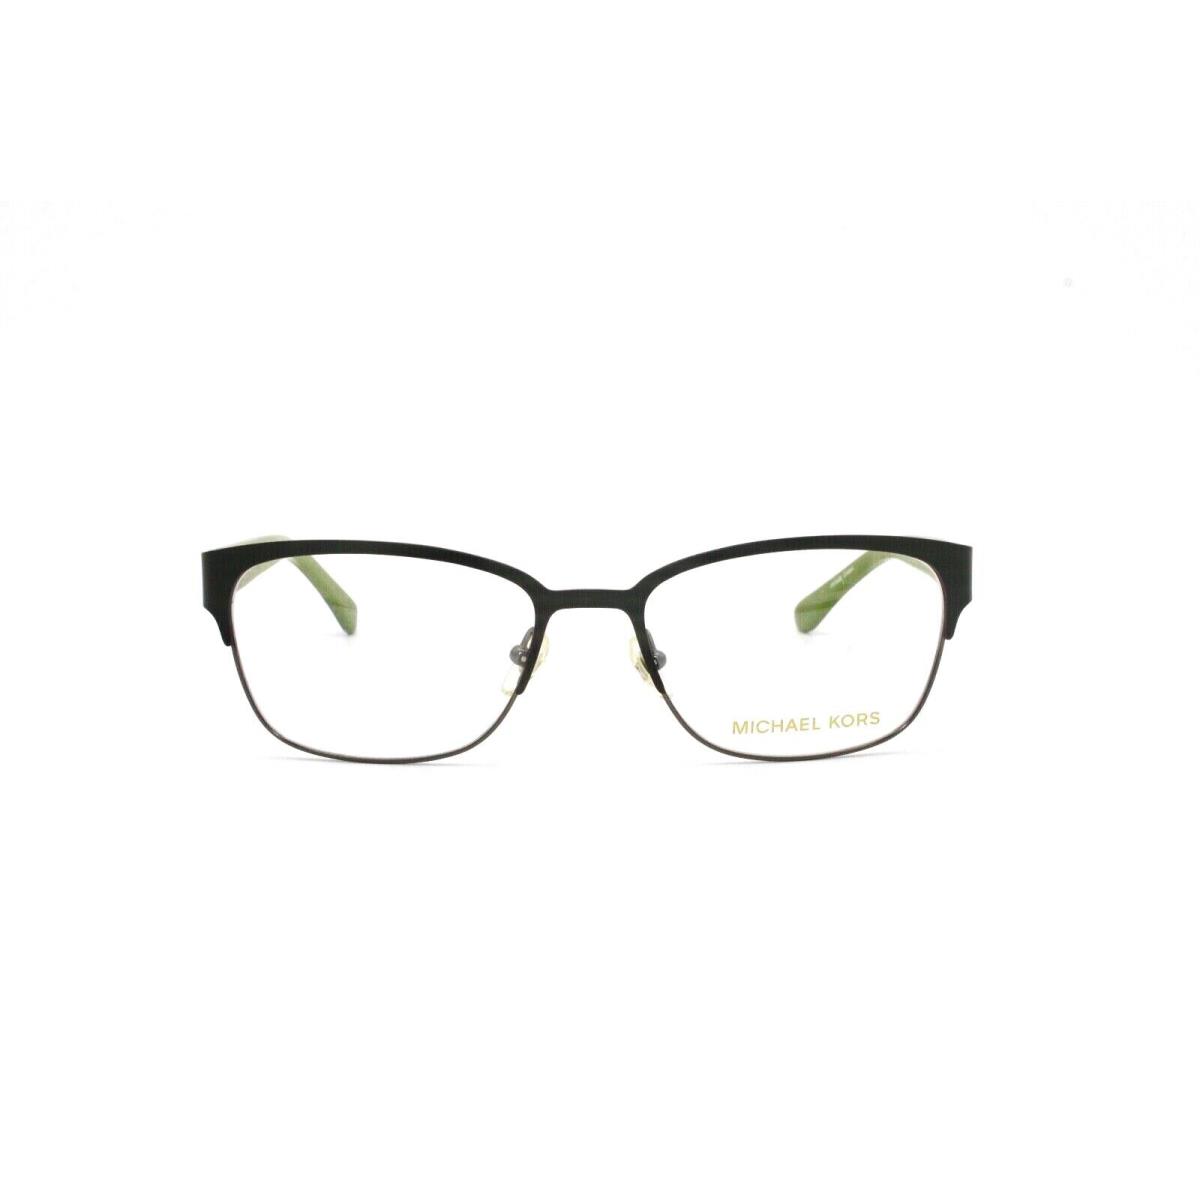 Michael Kors Eyeglass Frame MK346 064 53 17 140